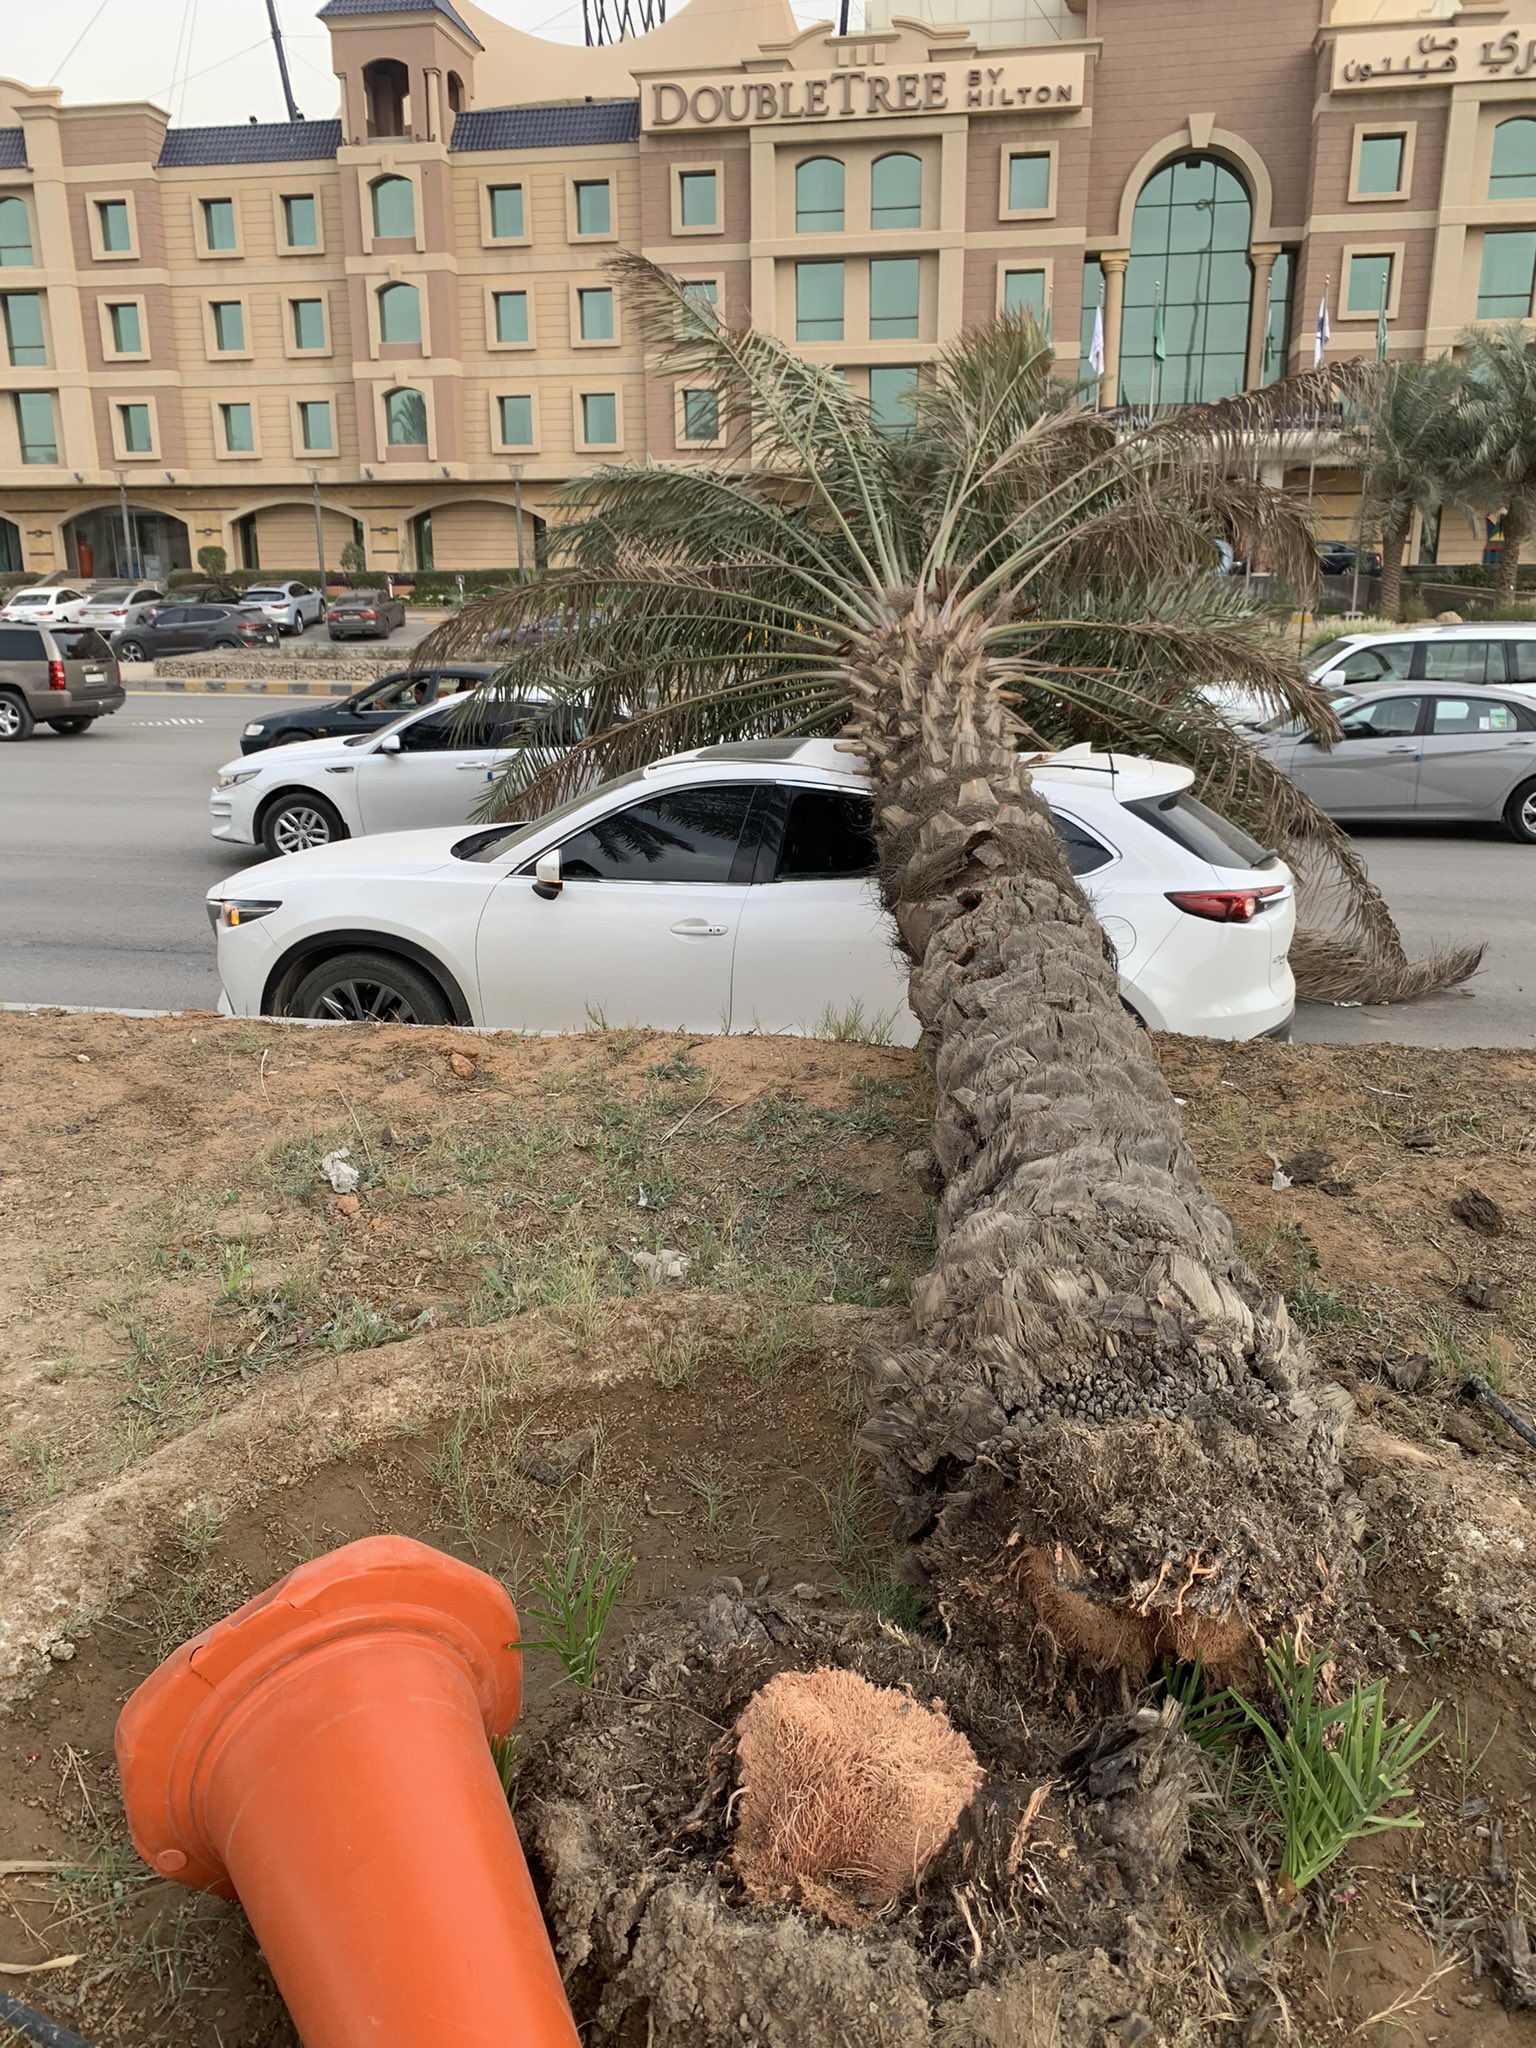 سقطت نخلة على سيارته في الرياض فتحمل نسبة خطأ 100%